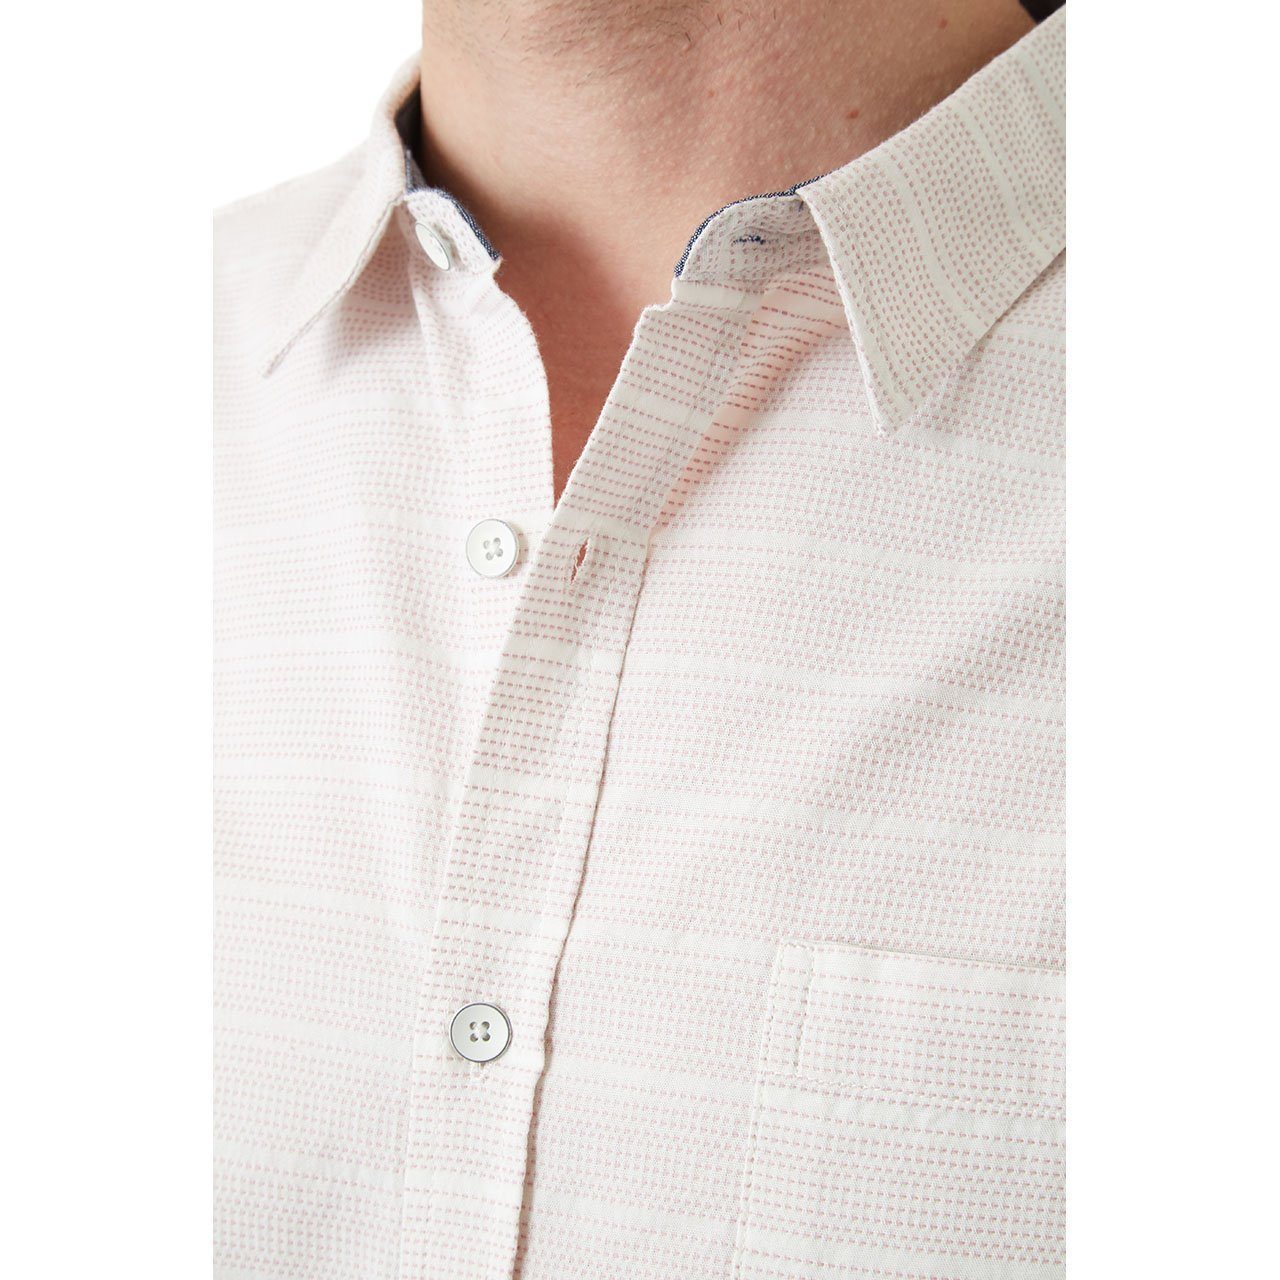 Short Sleeve Shirt - Kylan Shirt